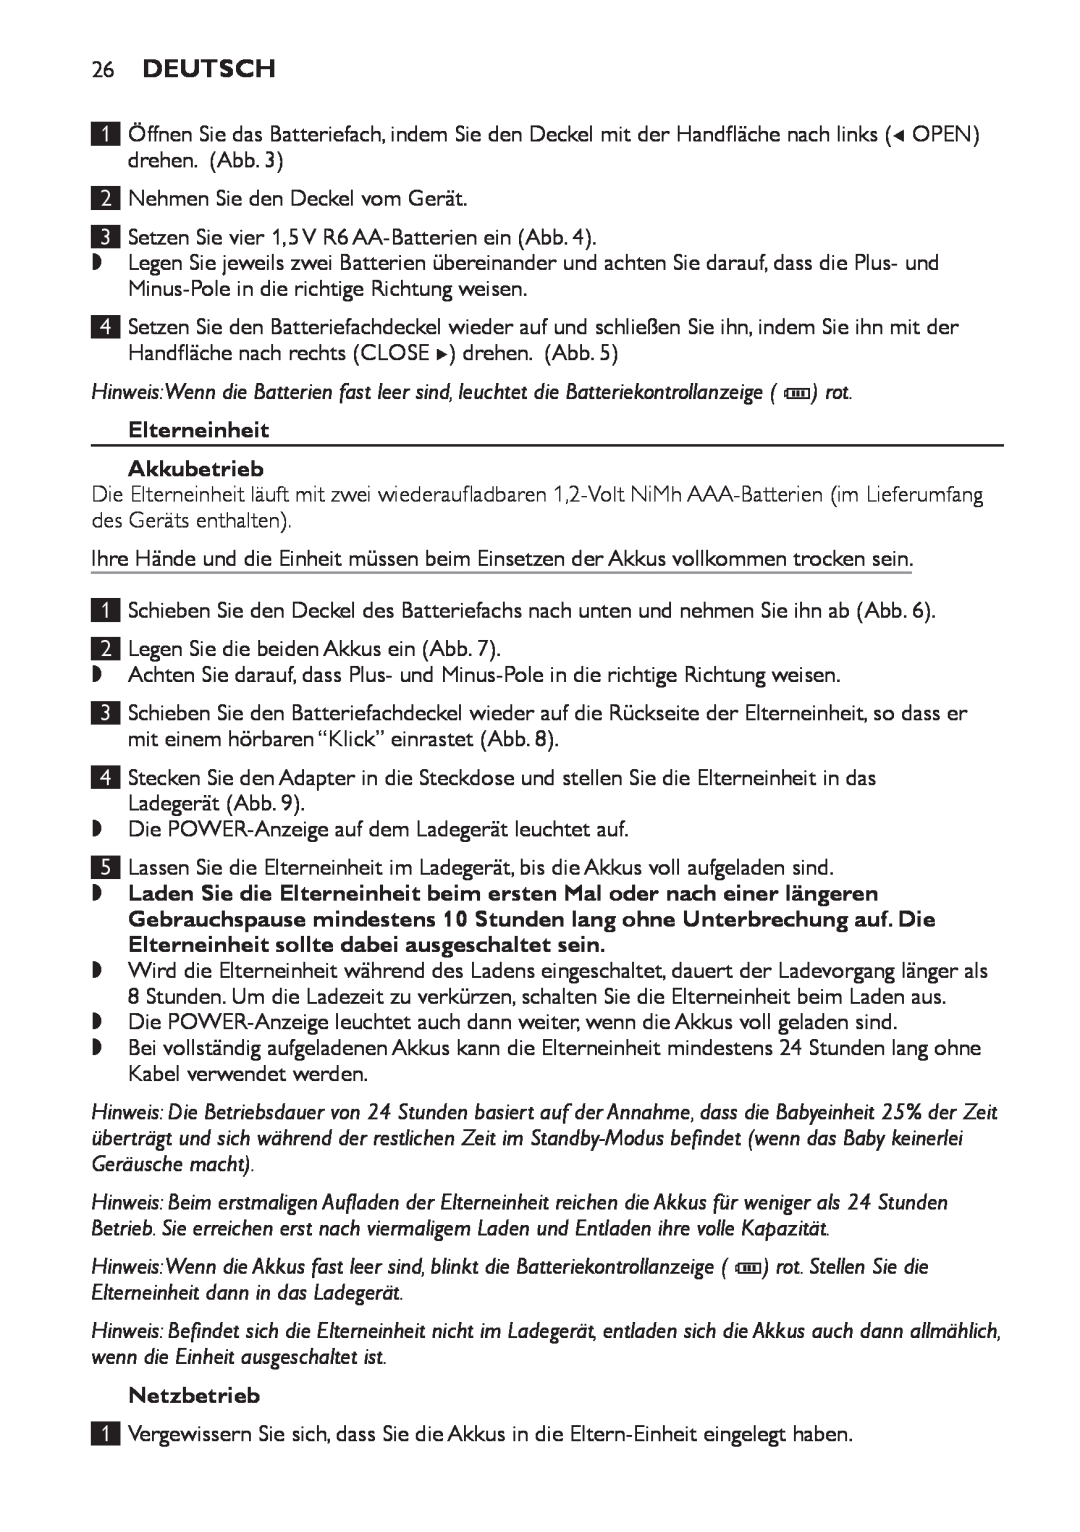 Philips SCD498 manual Deutsch, Elterneinheit Akkubetrieb, Netzbetrieb 